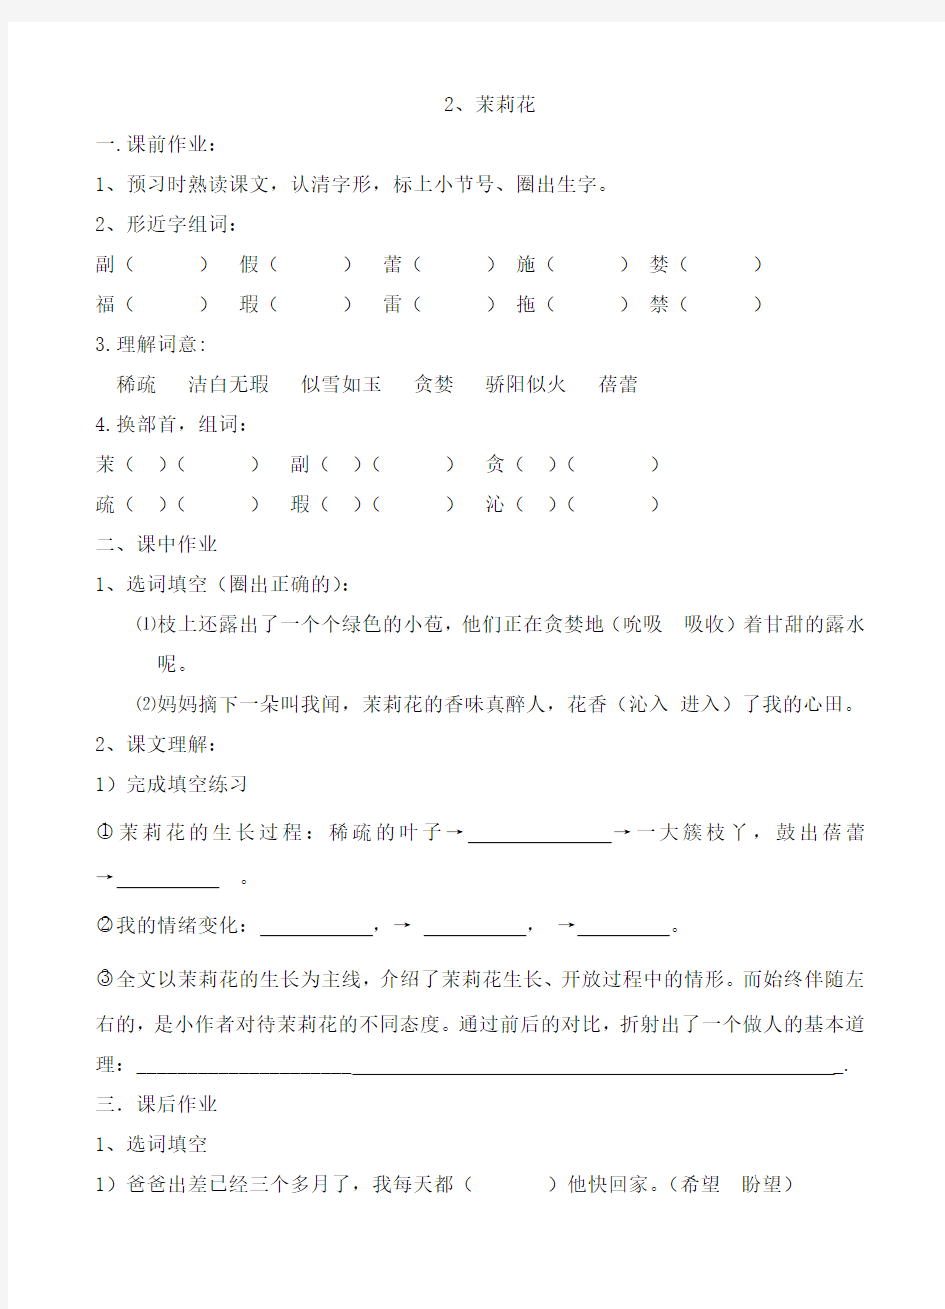 沪教版小学三级(上)2_茉莉花_语文课后、课外练习及作文课课练的答案